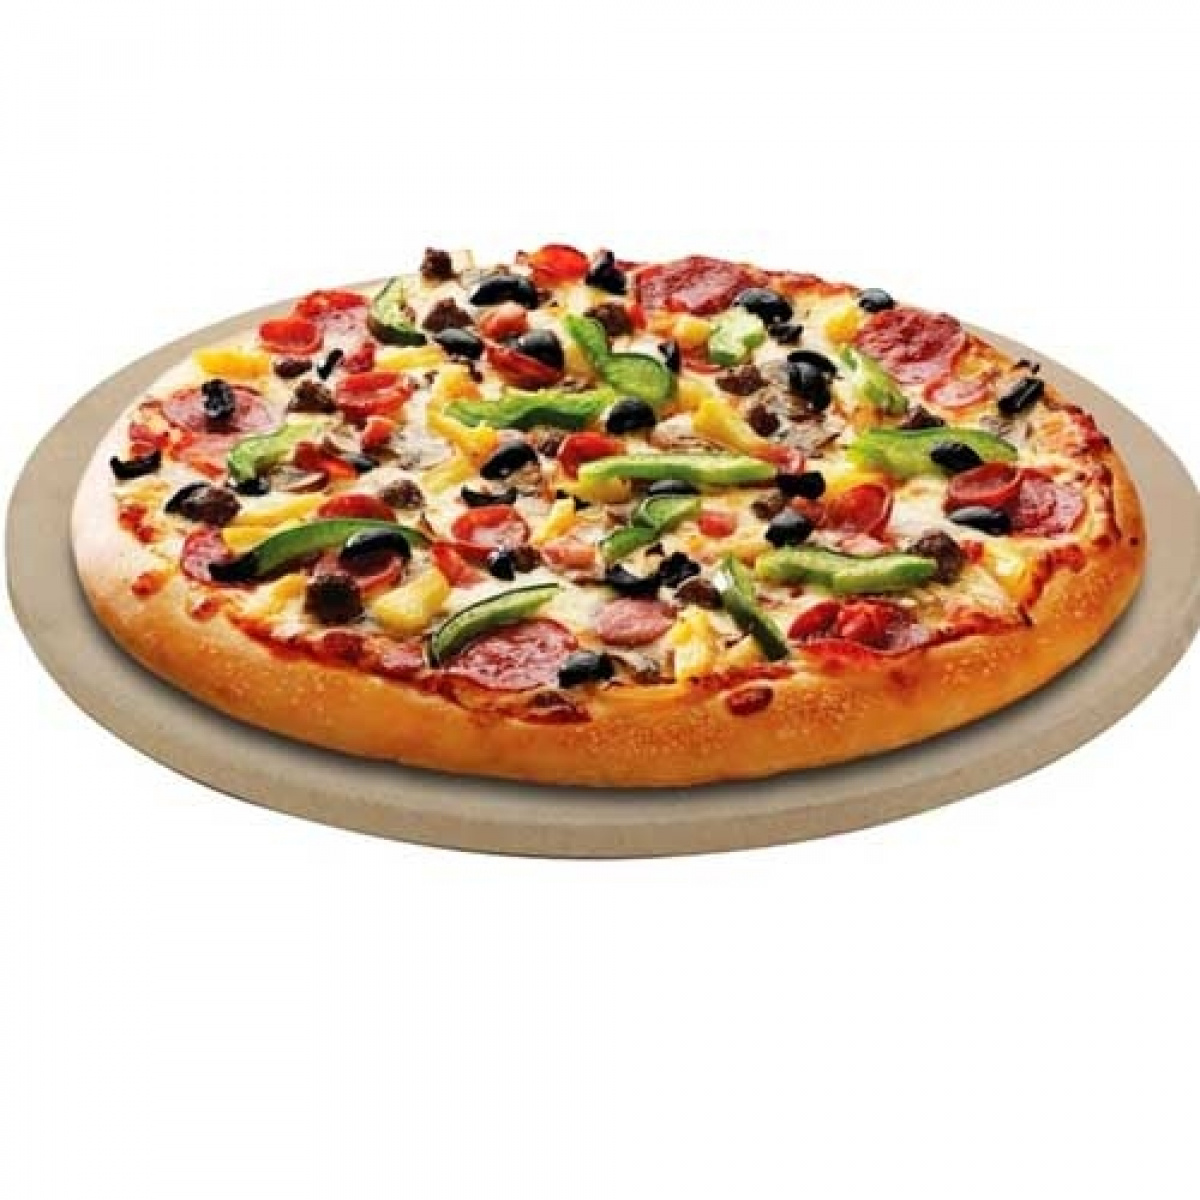 CADAC Grillin pizzakivi Ø 25 cm, useaan malliin ryhmässä Kotitalous & Keittiö / Grillit / Grilli Lisävarusteet @ Campmarket (66568)